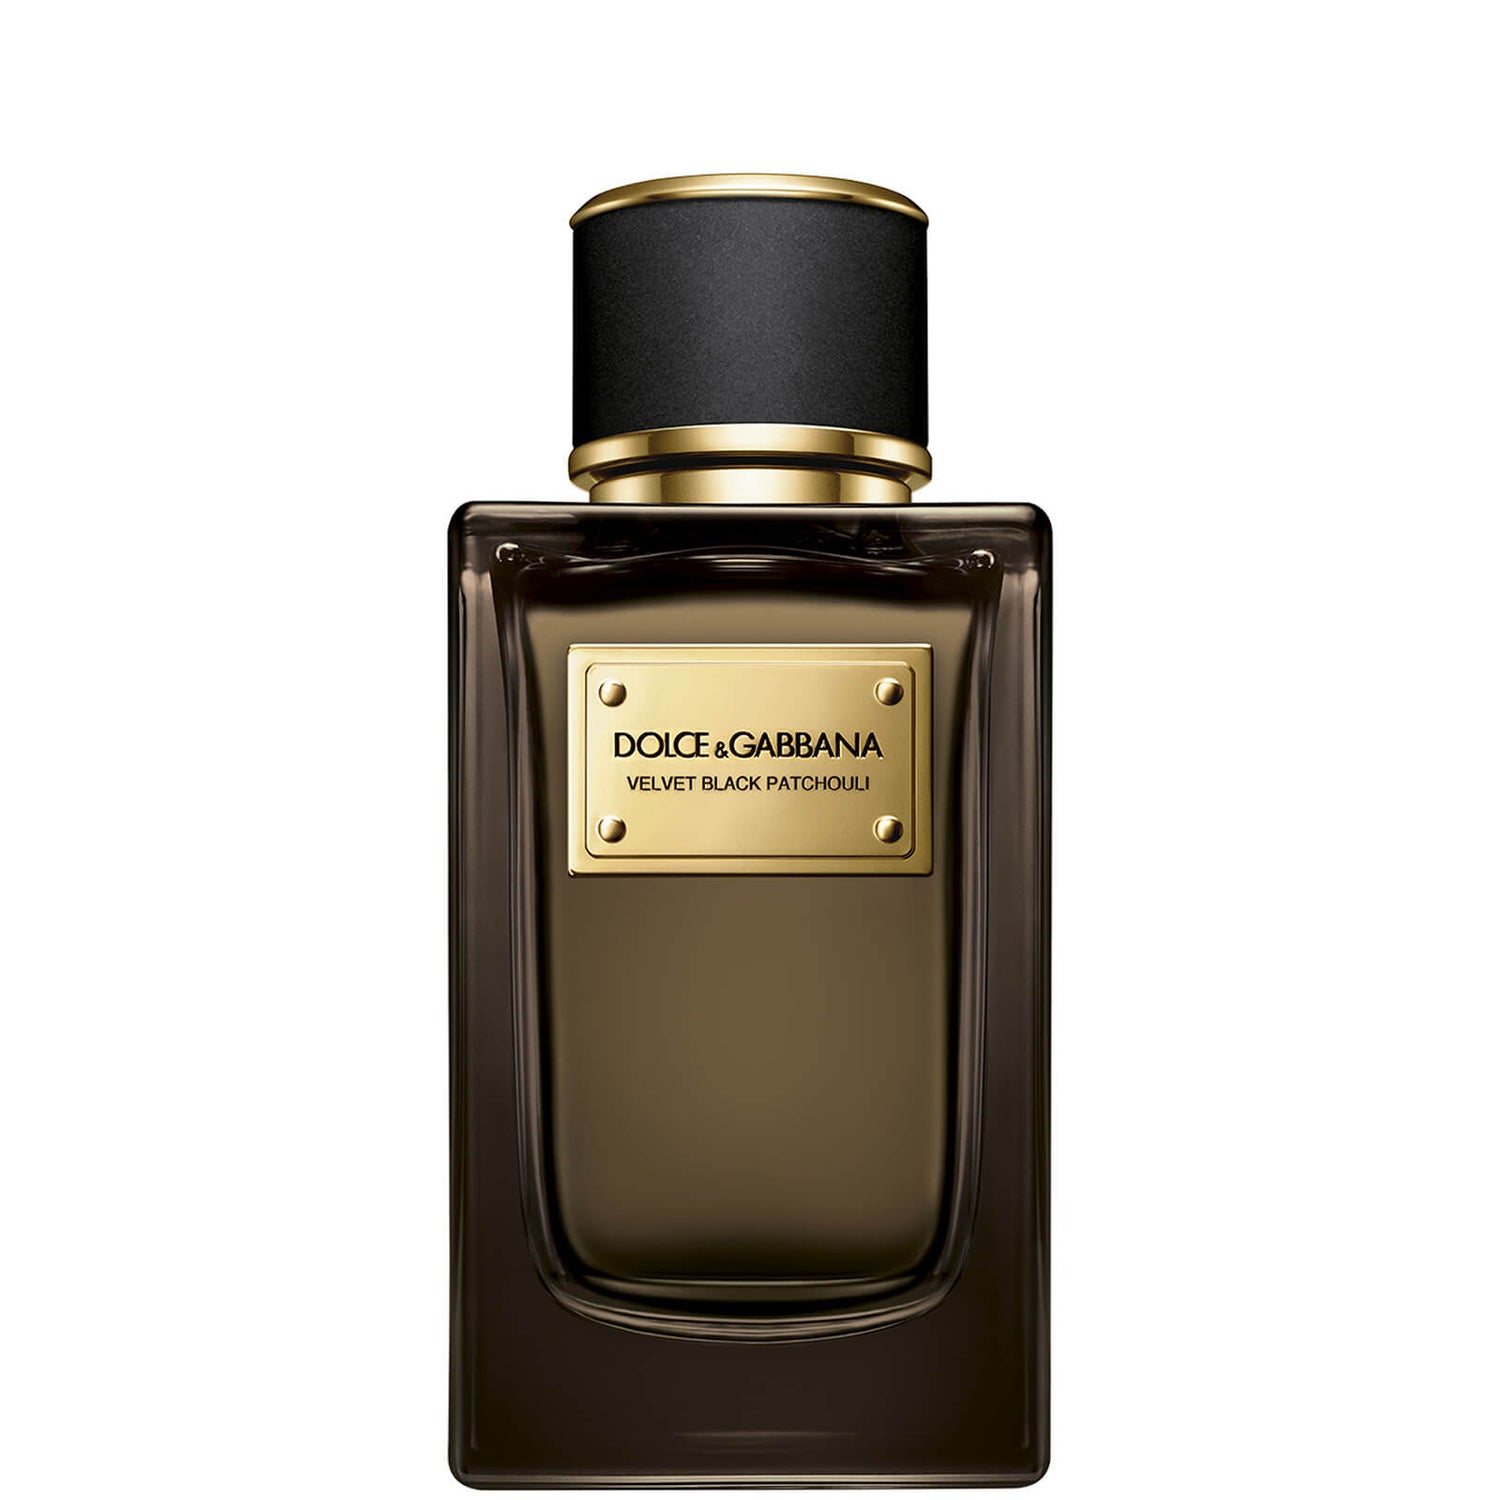 Dolce&Gabbana Velvet Black Patchouli Eau de Parfum - 150ml | LOOKFANTASTIC